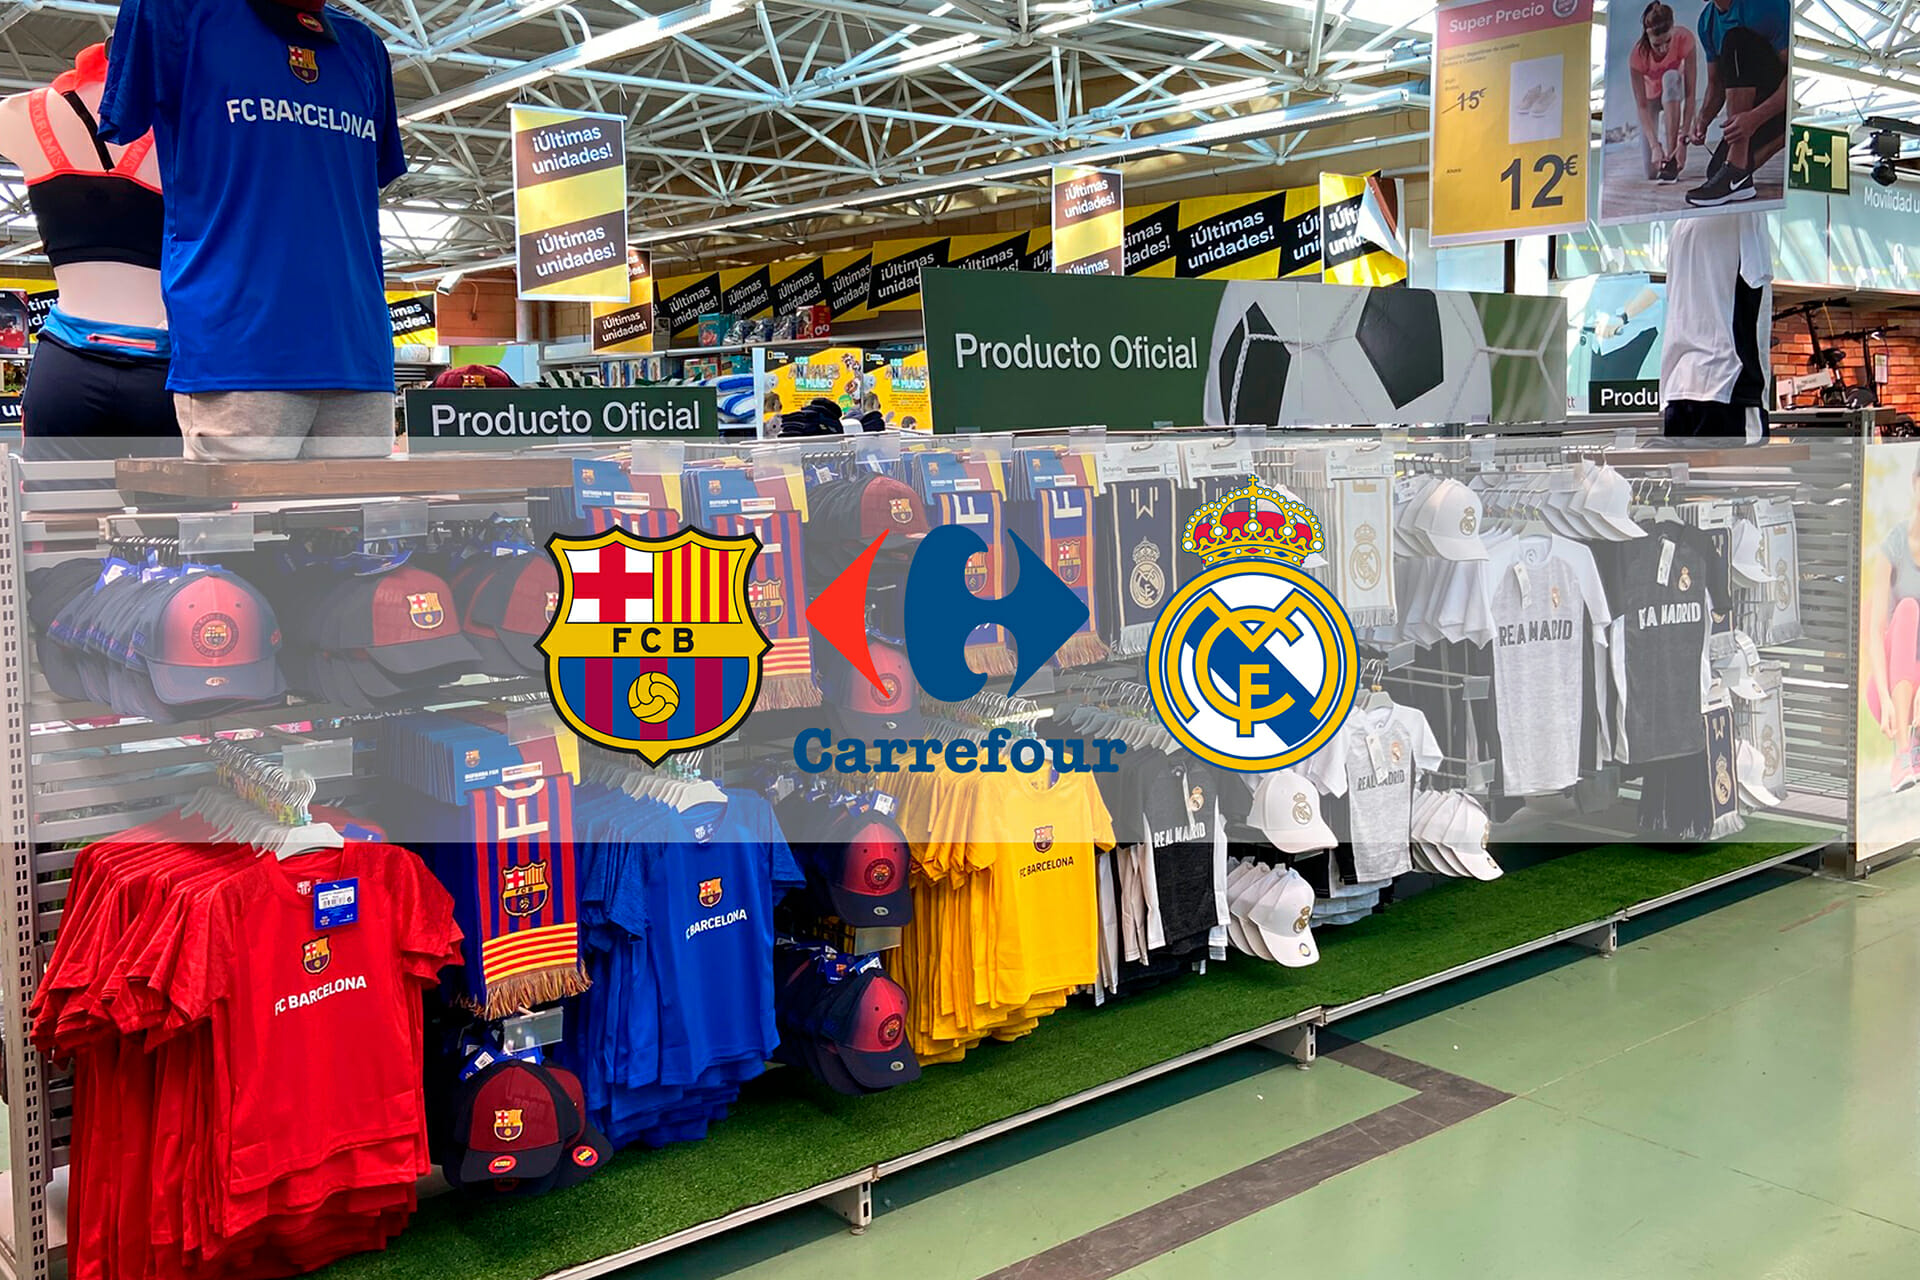 Nuevos stands merchandising Barça y Real Madrid en los C.C. Carrefour de Madrid